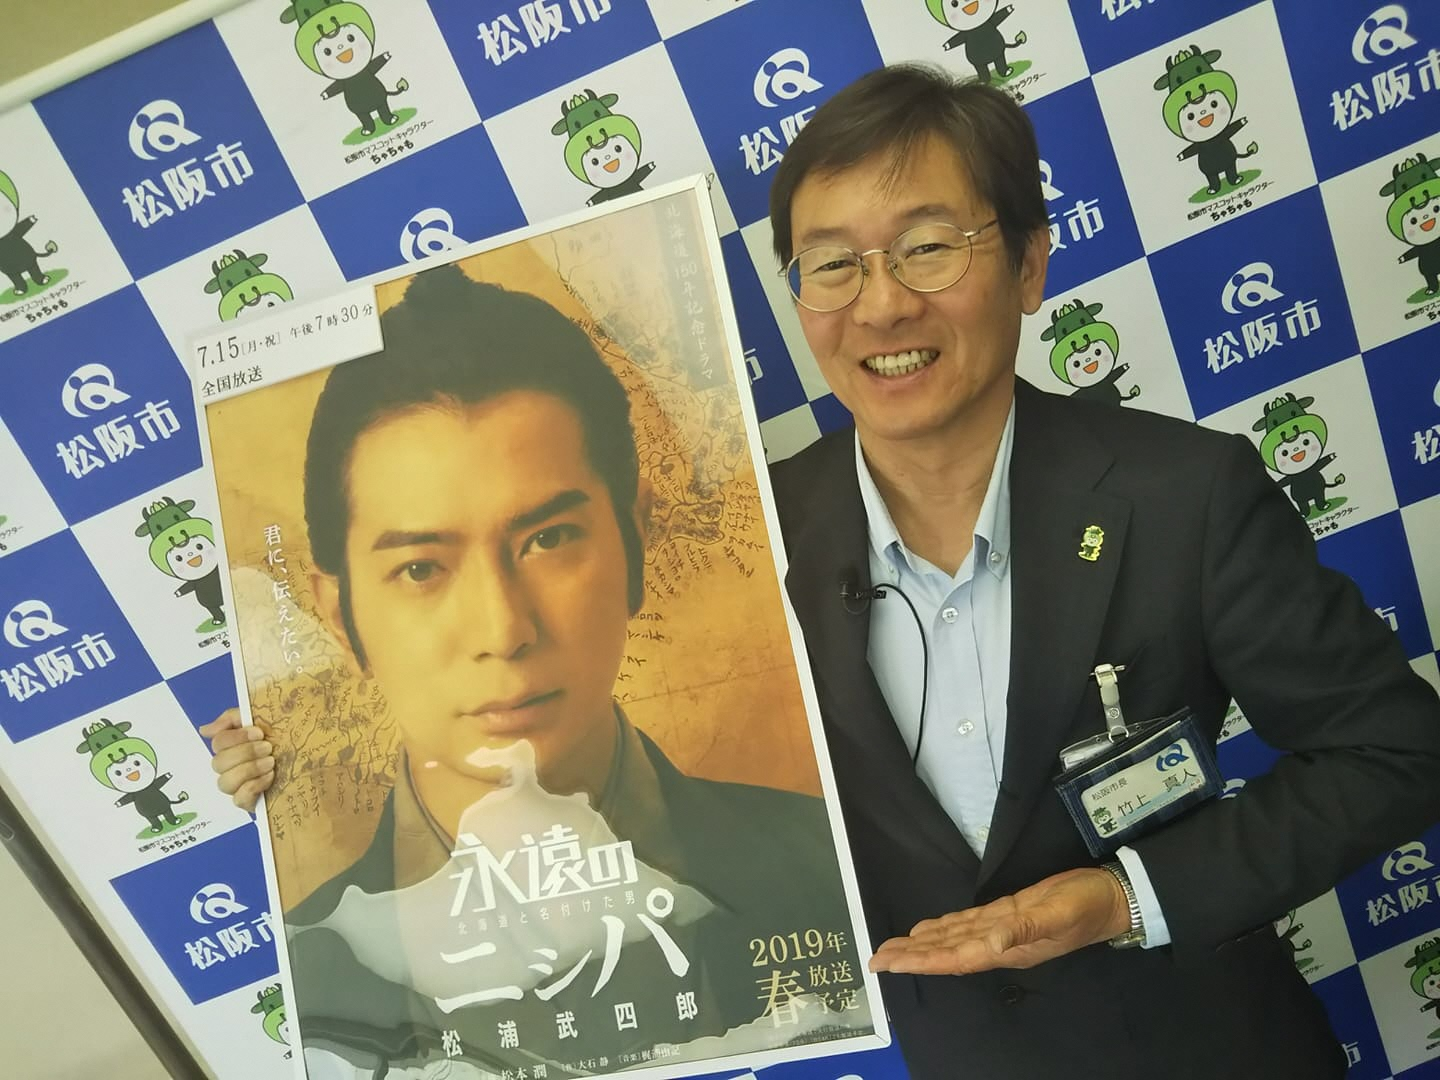 ドラマの主演で俳優の松本潤さんのポスターパネルを持った竹上市長